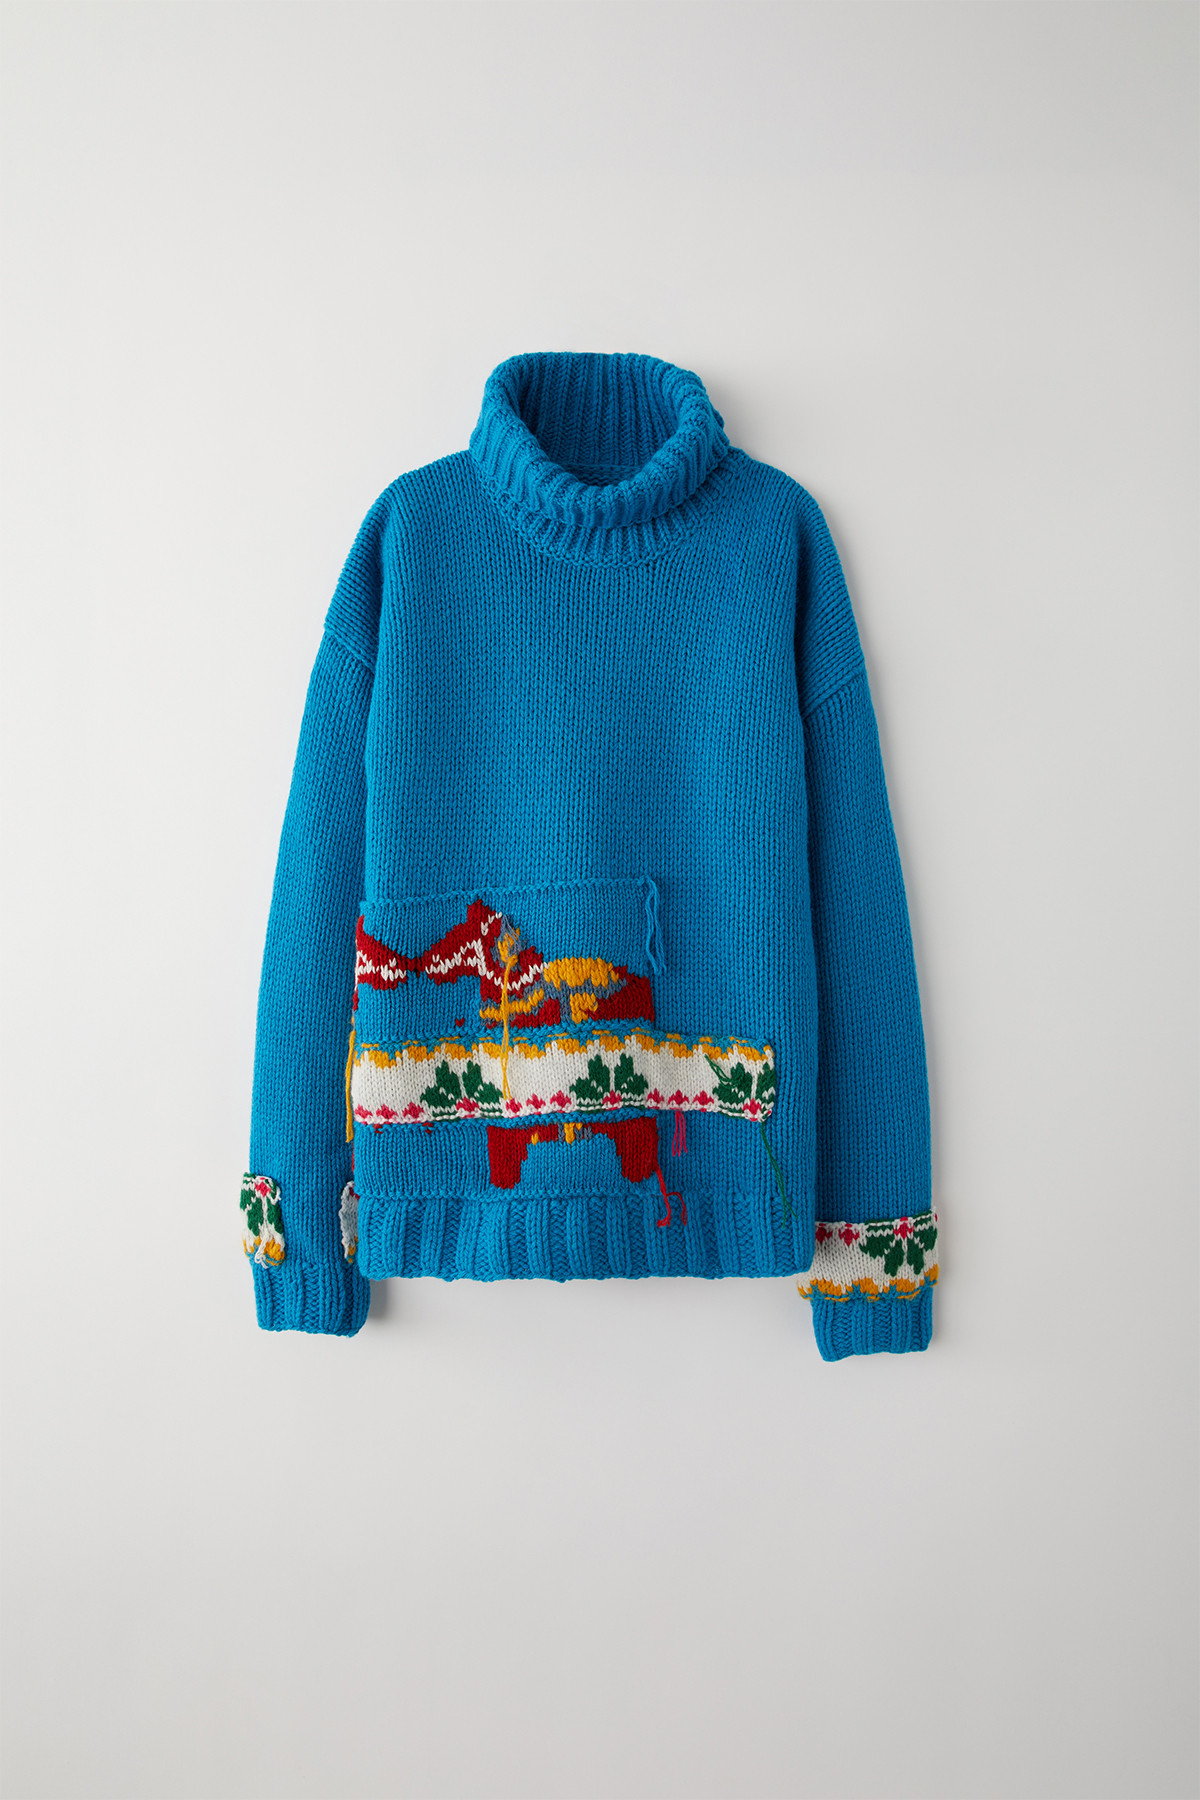 https hypebeast.com wp content blogs.dir 6 files 2018 11 acne studios hand knit wool sweaters fall winter 1 Zima w nordyckim stylu. Acne Studios pokazuje kolekcję robionych na drutach swetrów